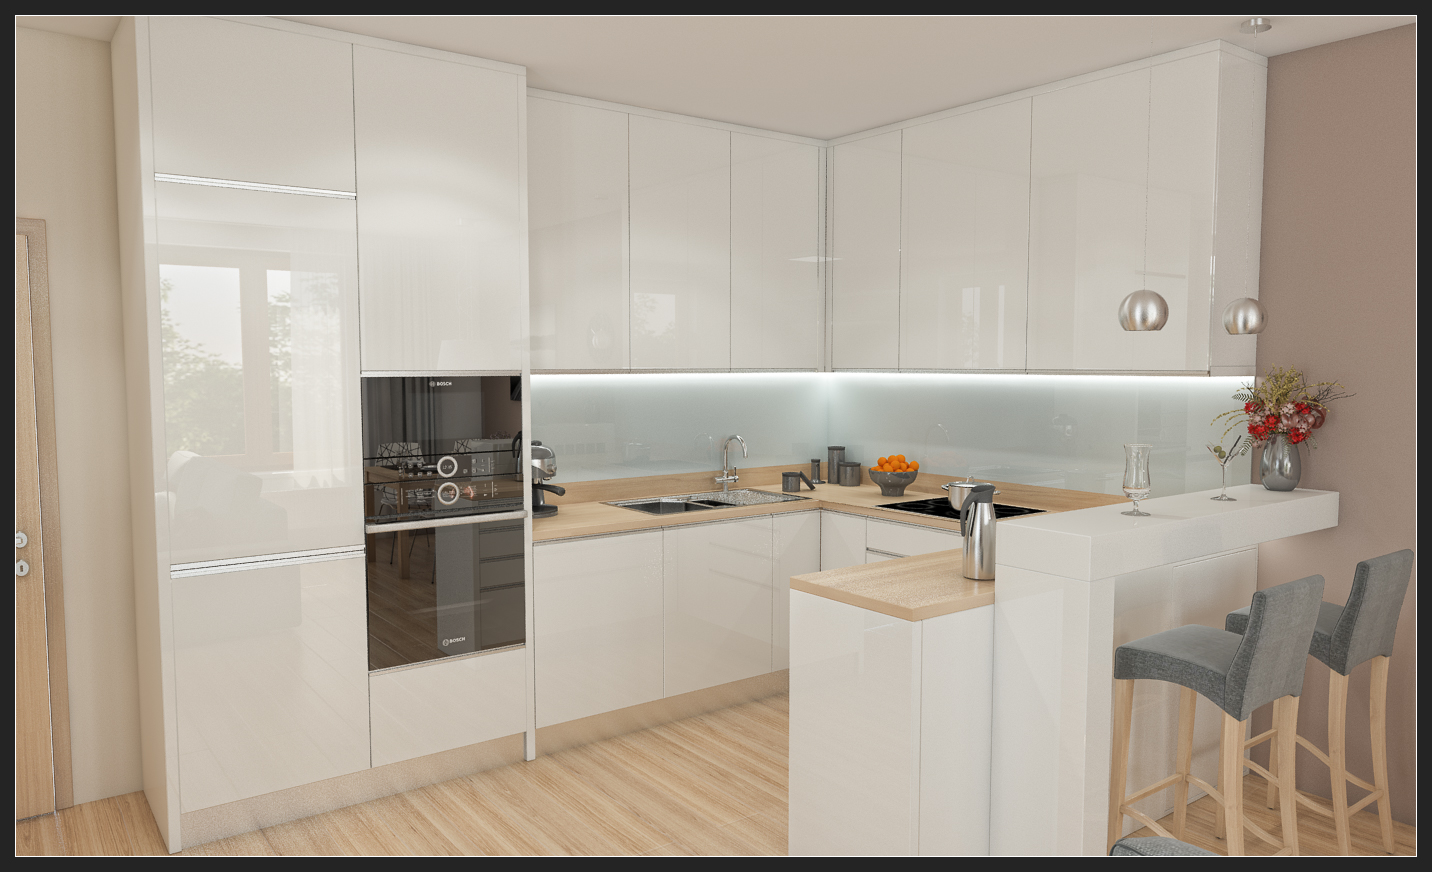 Moderní bílá kuchyň bez úchytek - TIDE interiery